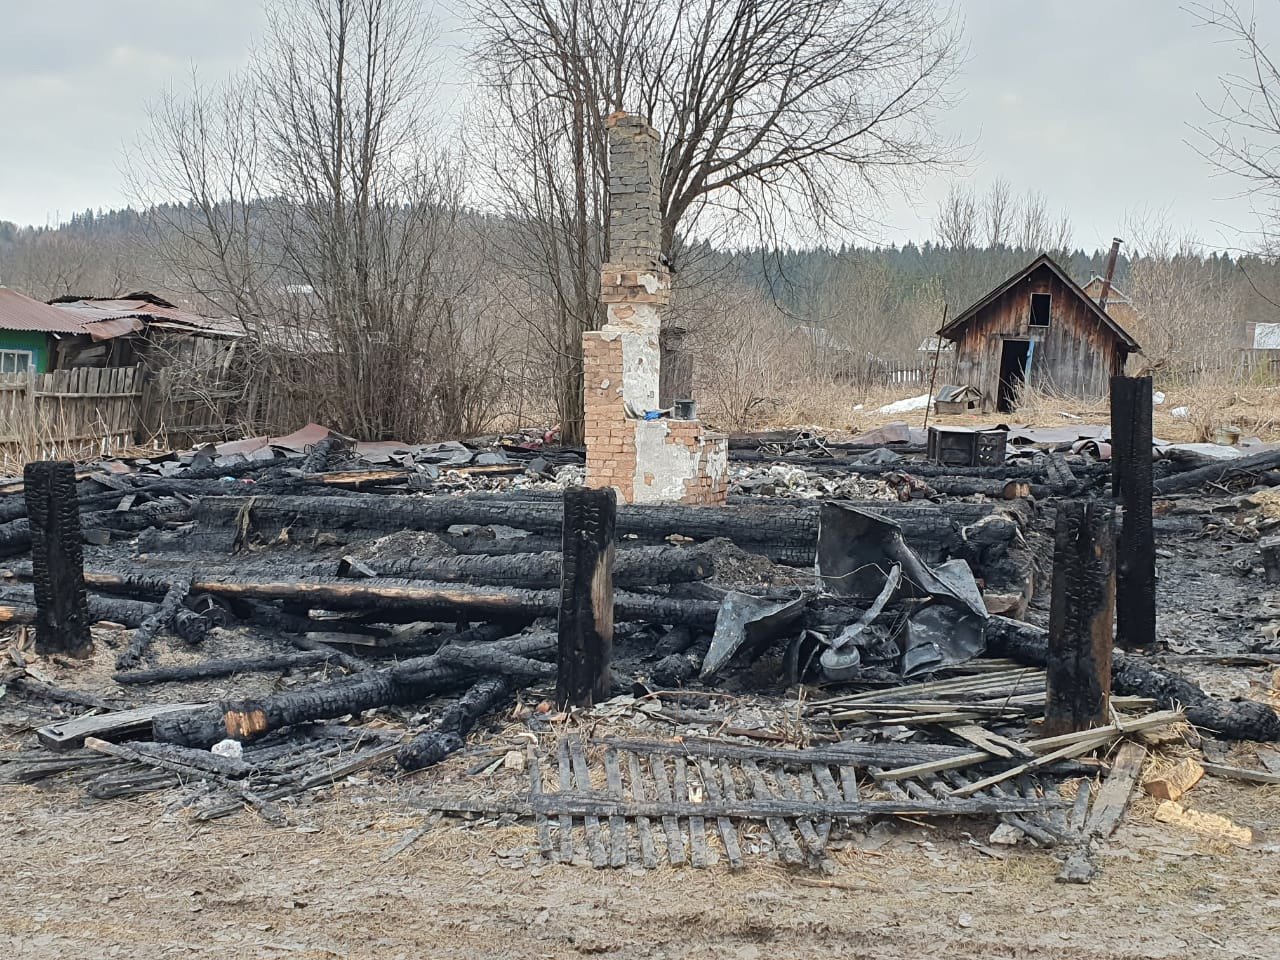 

В Пермском крае задержали мать четверых детей, погибших при пожаре

